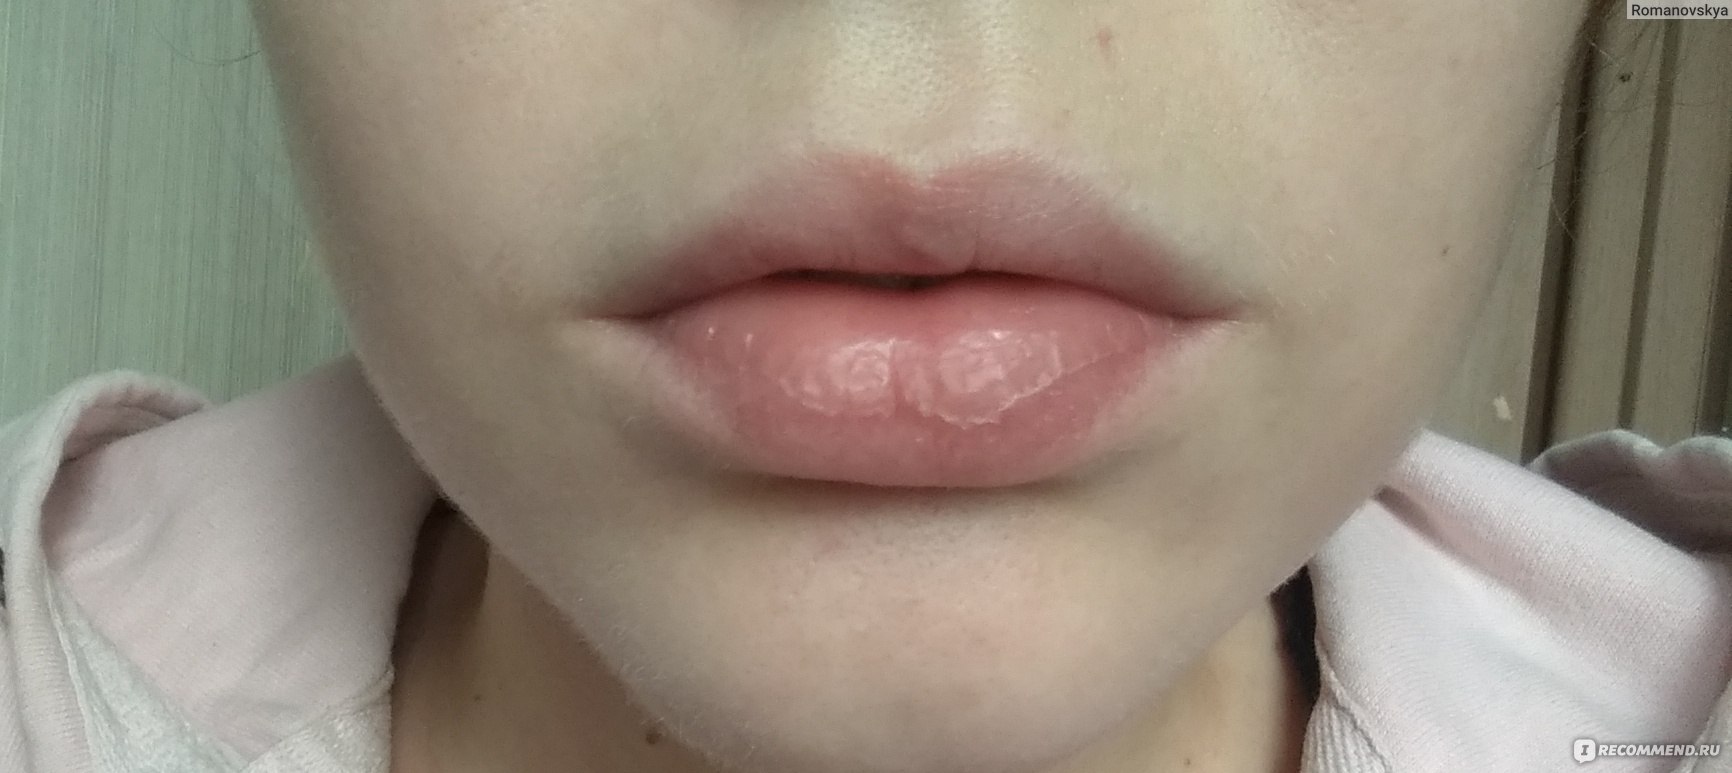 Обаеьренные губы после поцелу